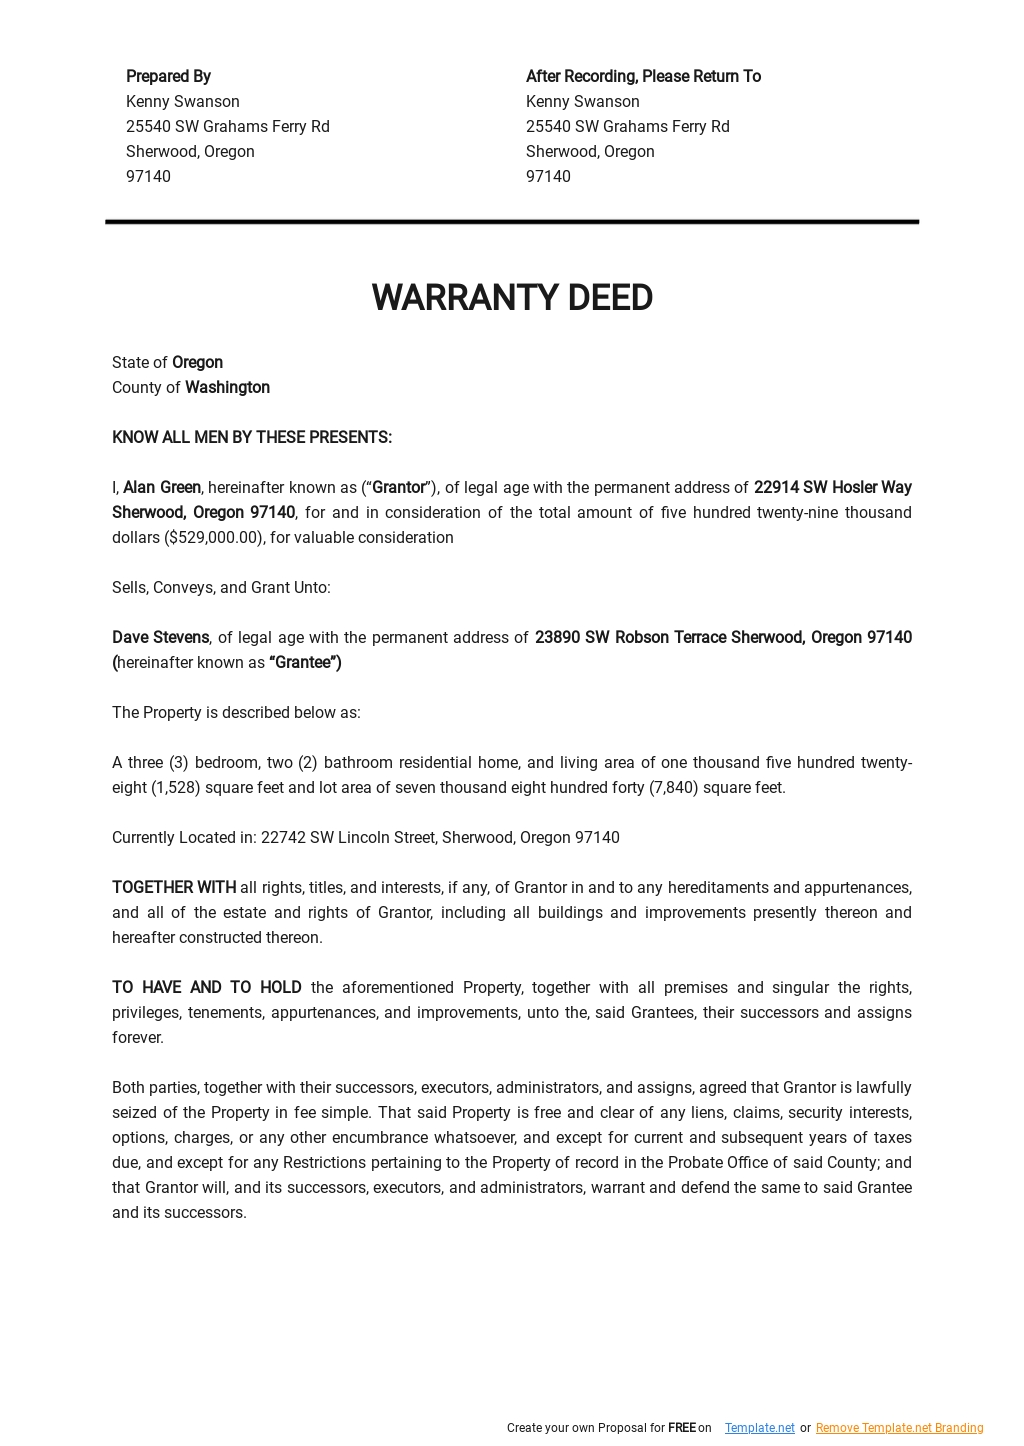 Standard Warranty Deed Template